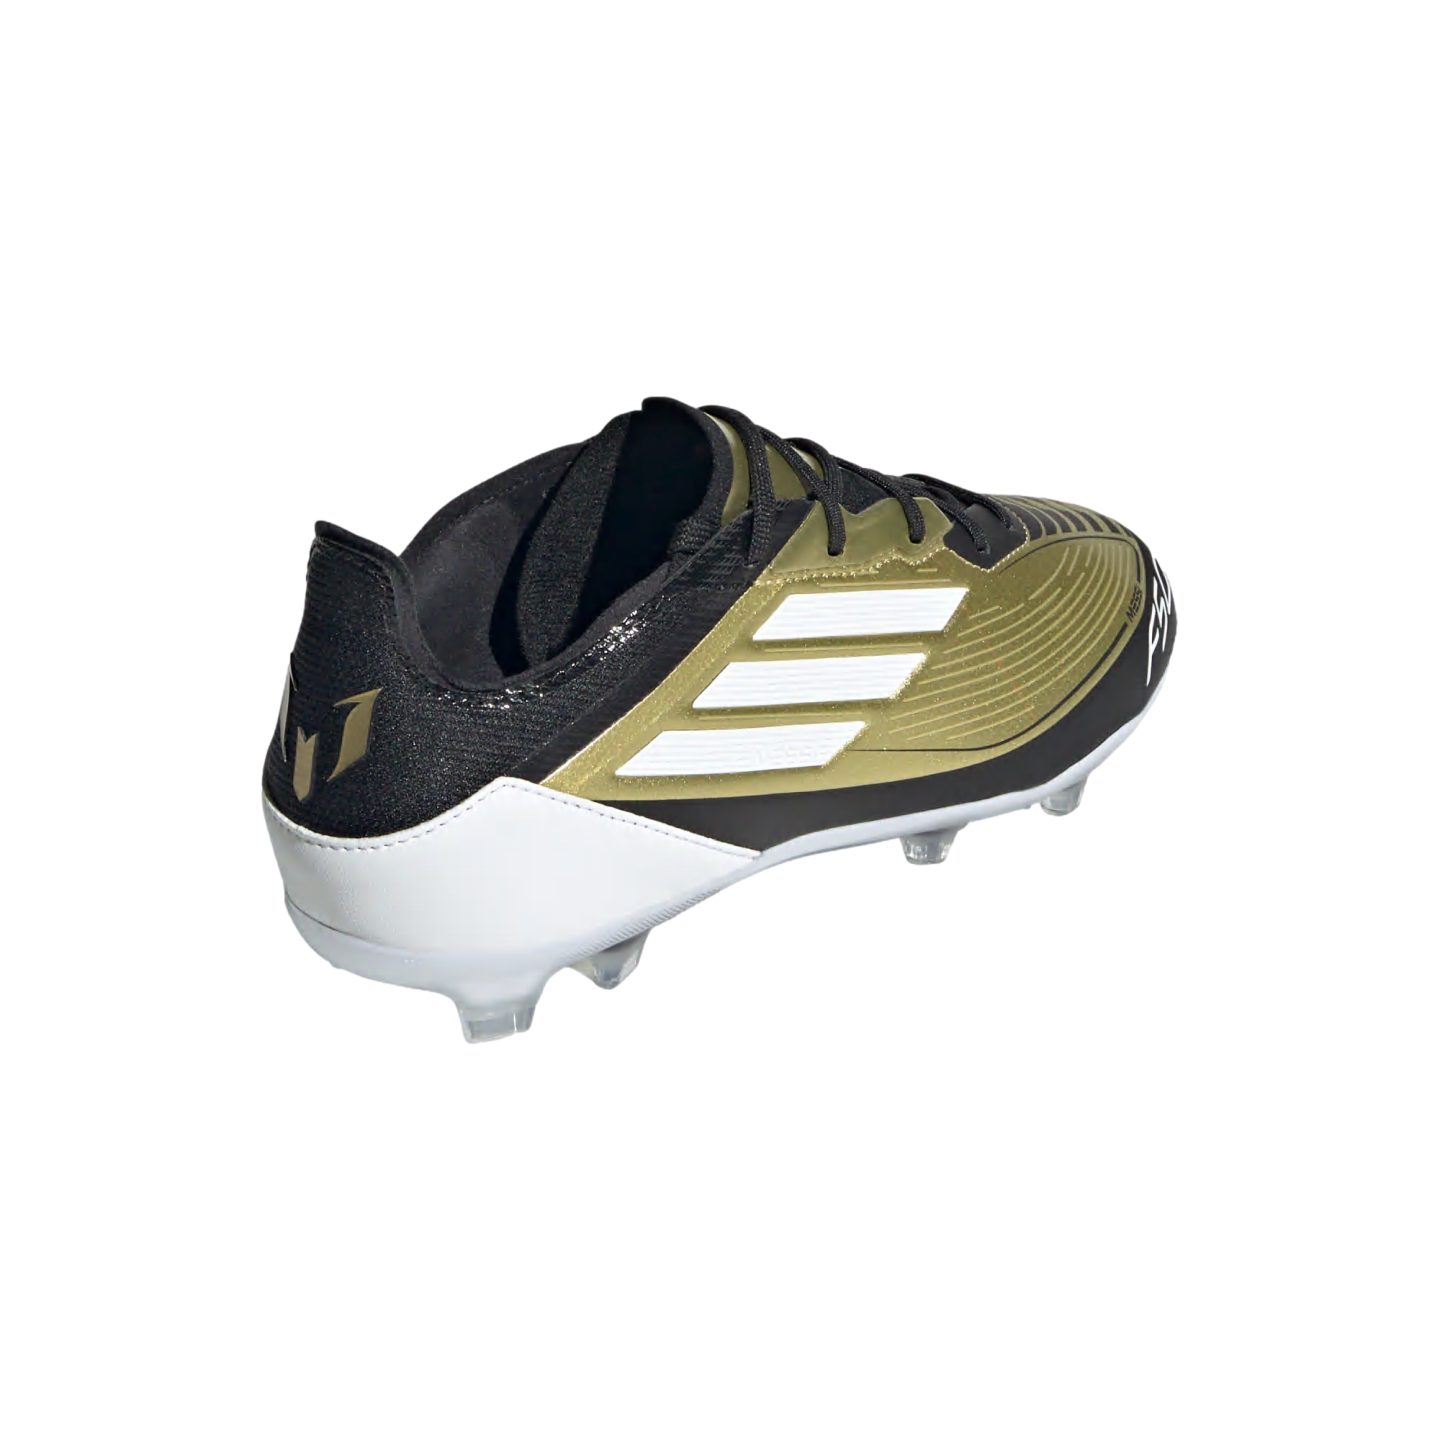 (ADID-IF6917) Zapatos para terreno firme Adidas F50 Pro Messi para jóvenes [GOLDMT,FTWWHT,CBLACK] (Lanzamiento 20/06/24)